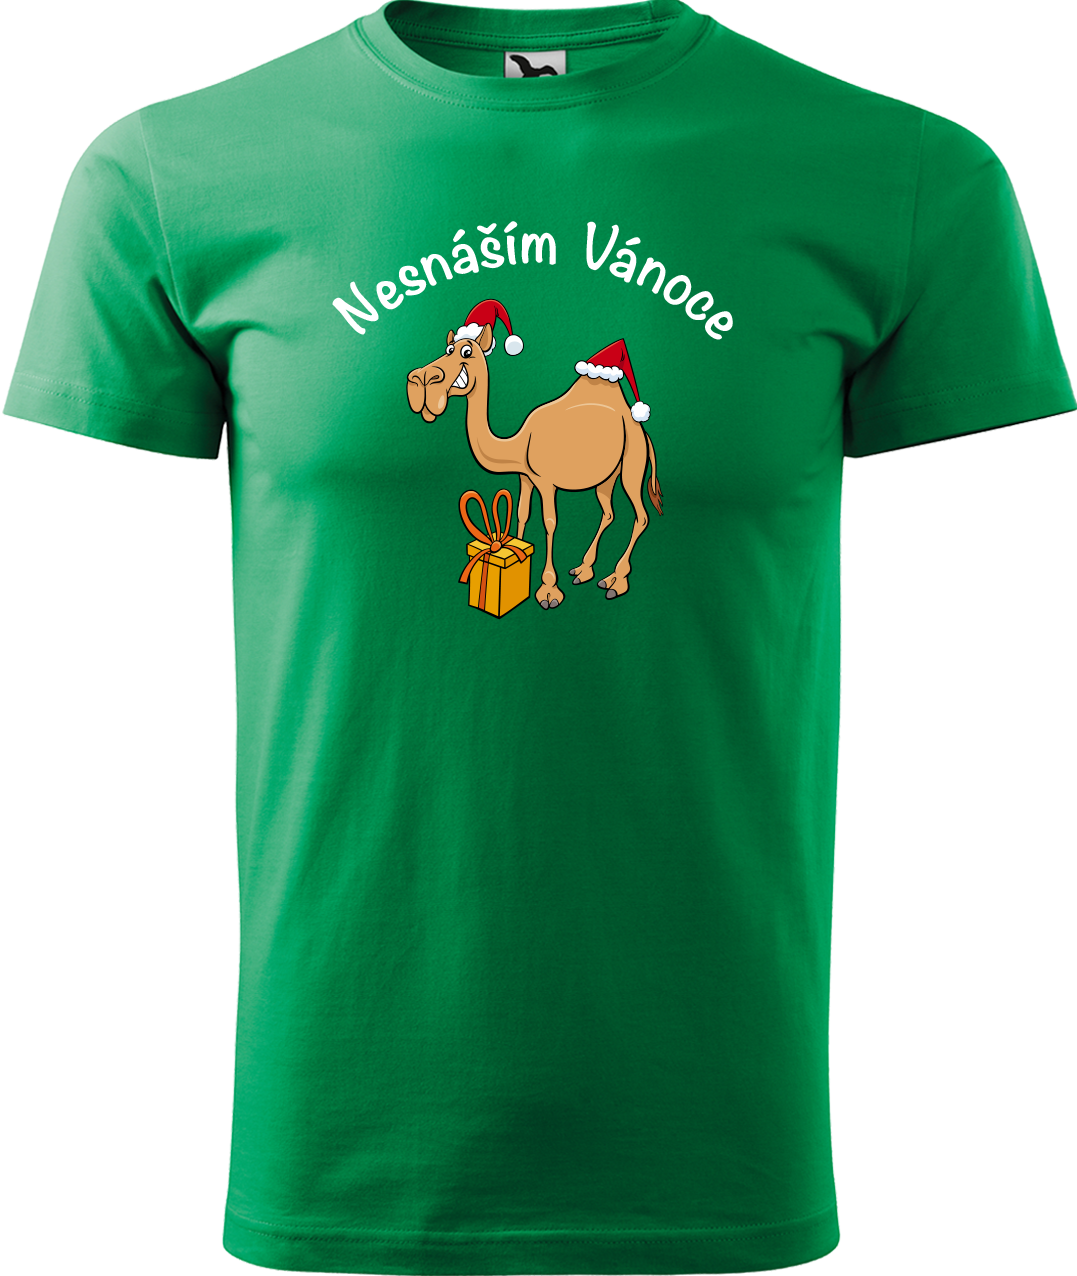 Pánské vánoční tričko - Nesnáším Vánoce Velikost: XL, Barva: Středně zelená (16)